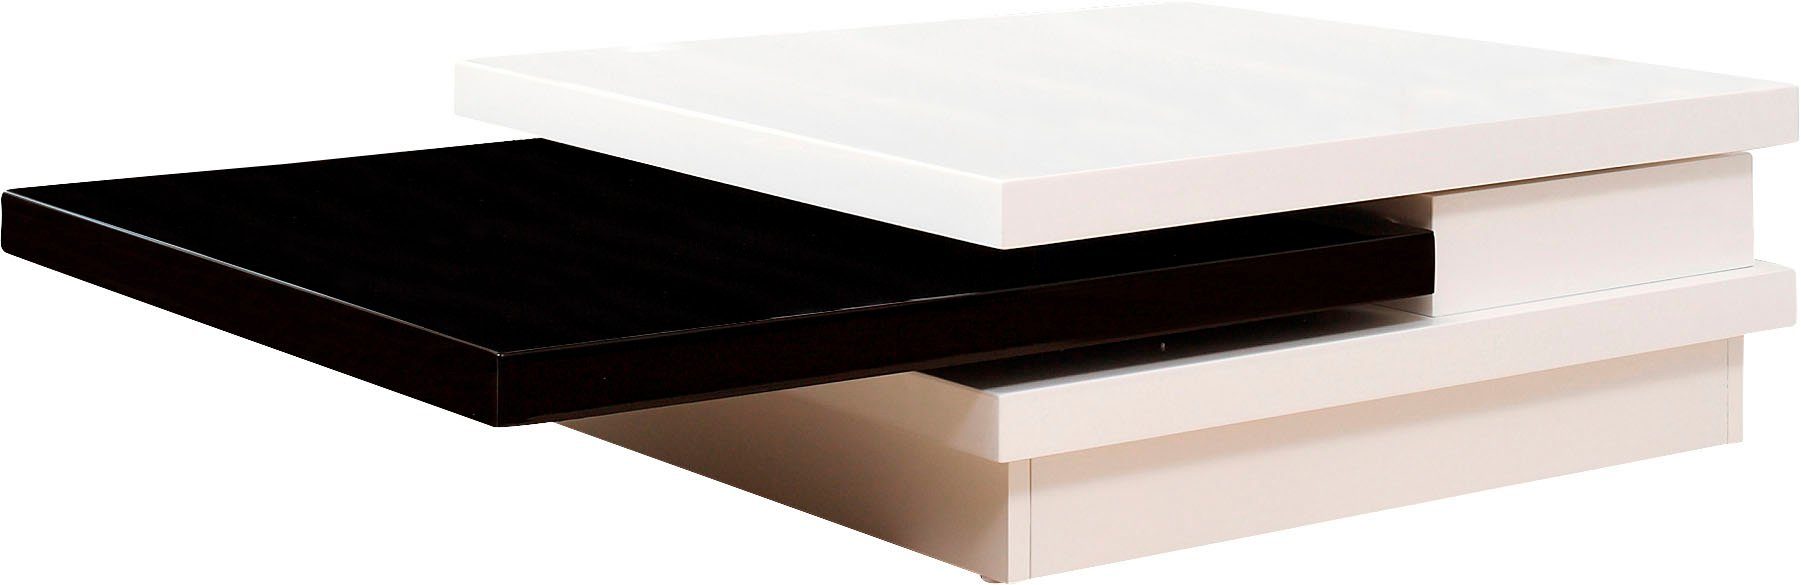 SalesFever Couchtisch, Tischplatte schwarz/weiß um drehbar 360°